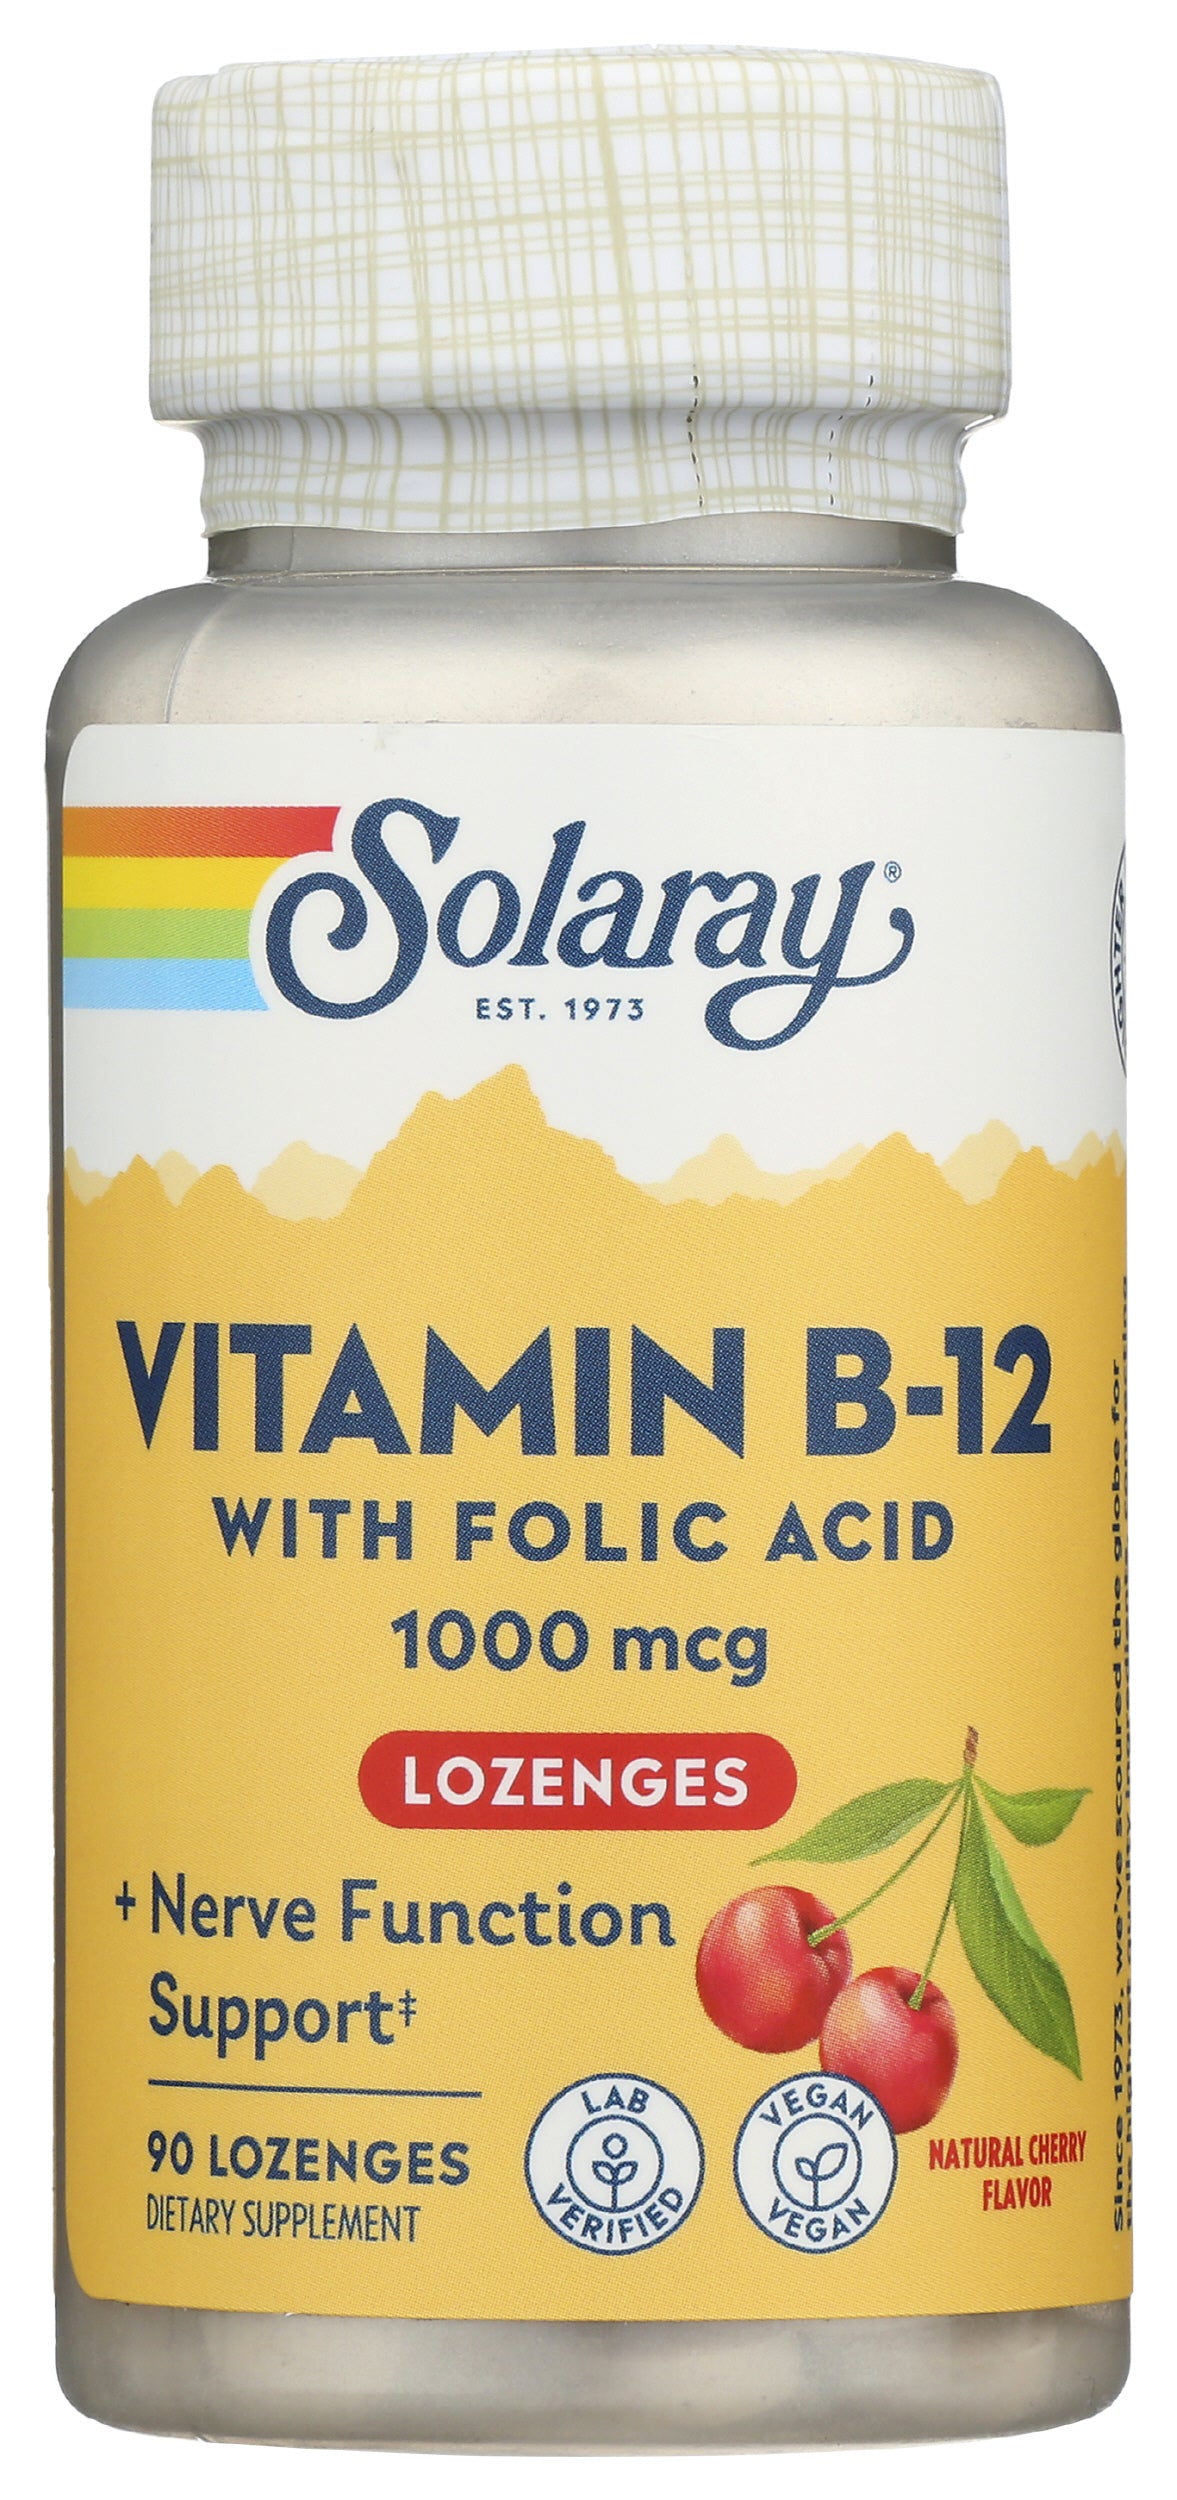 Solaray Vitamin B-12 with Folic Acid 90 Lozenges